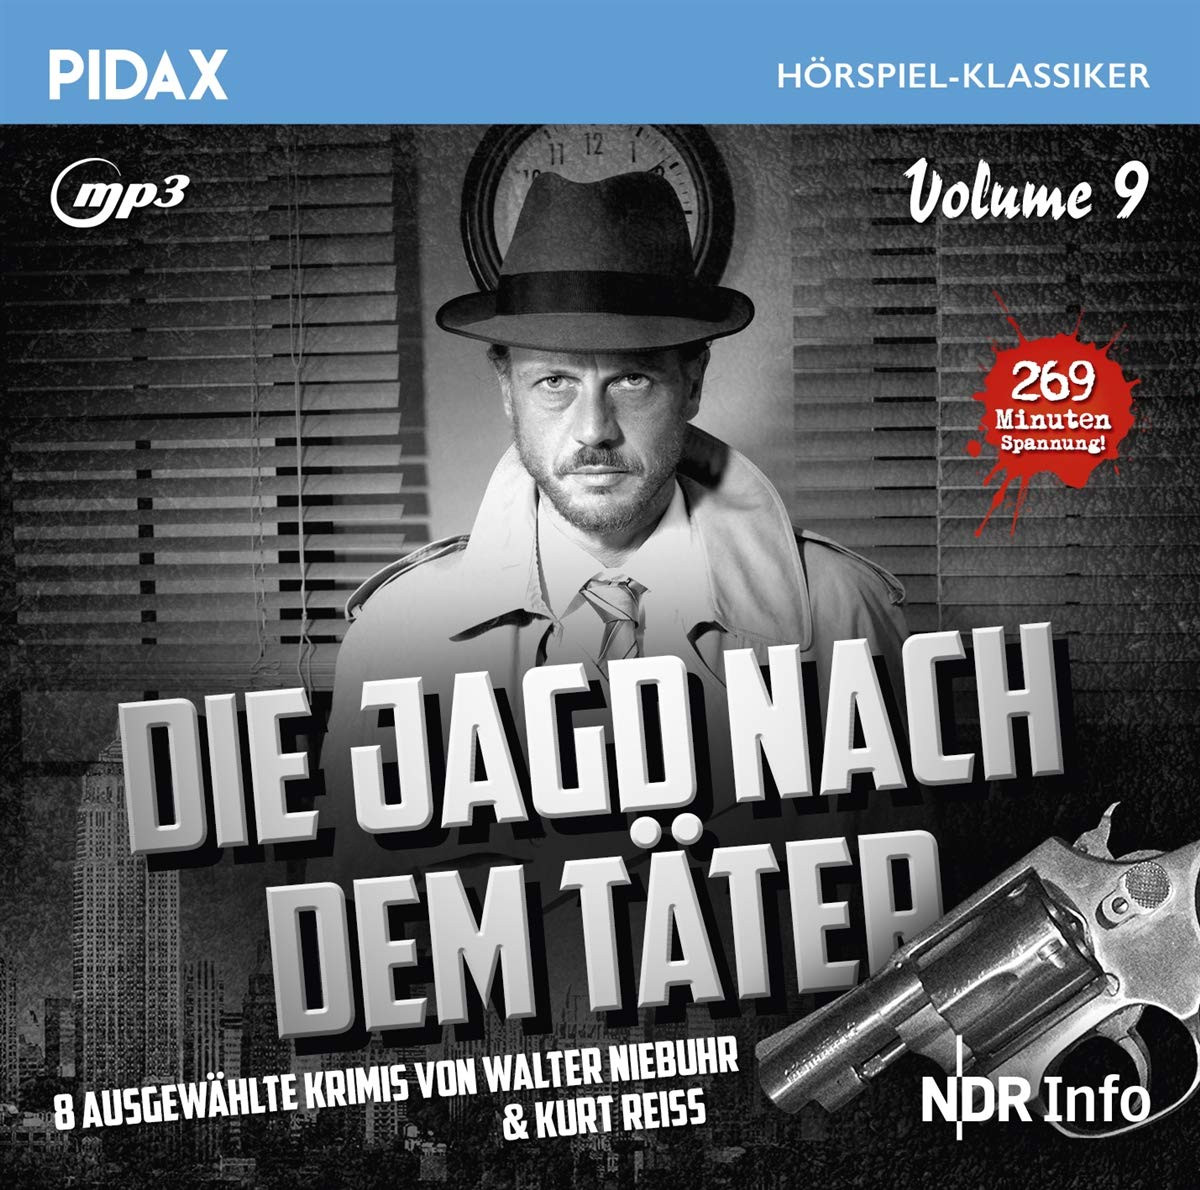 Pidax Hörspiel Klassiker - Die Jagd nach dem Täter - Vol. 9